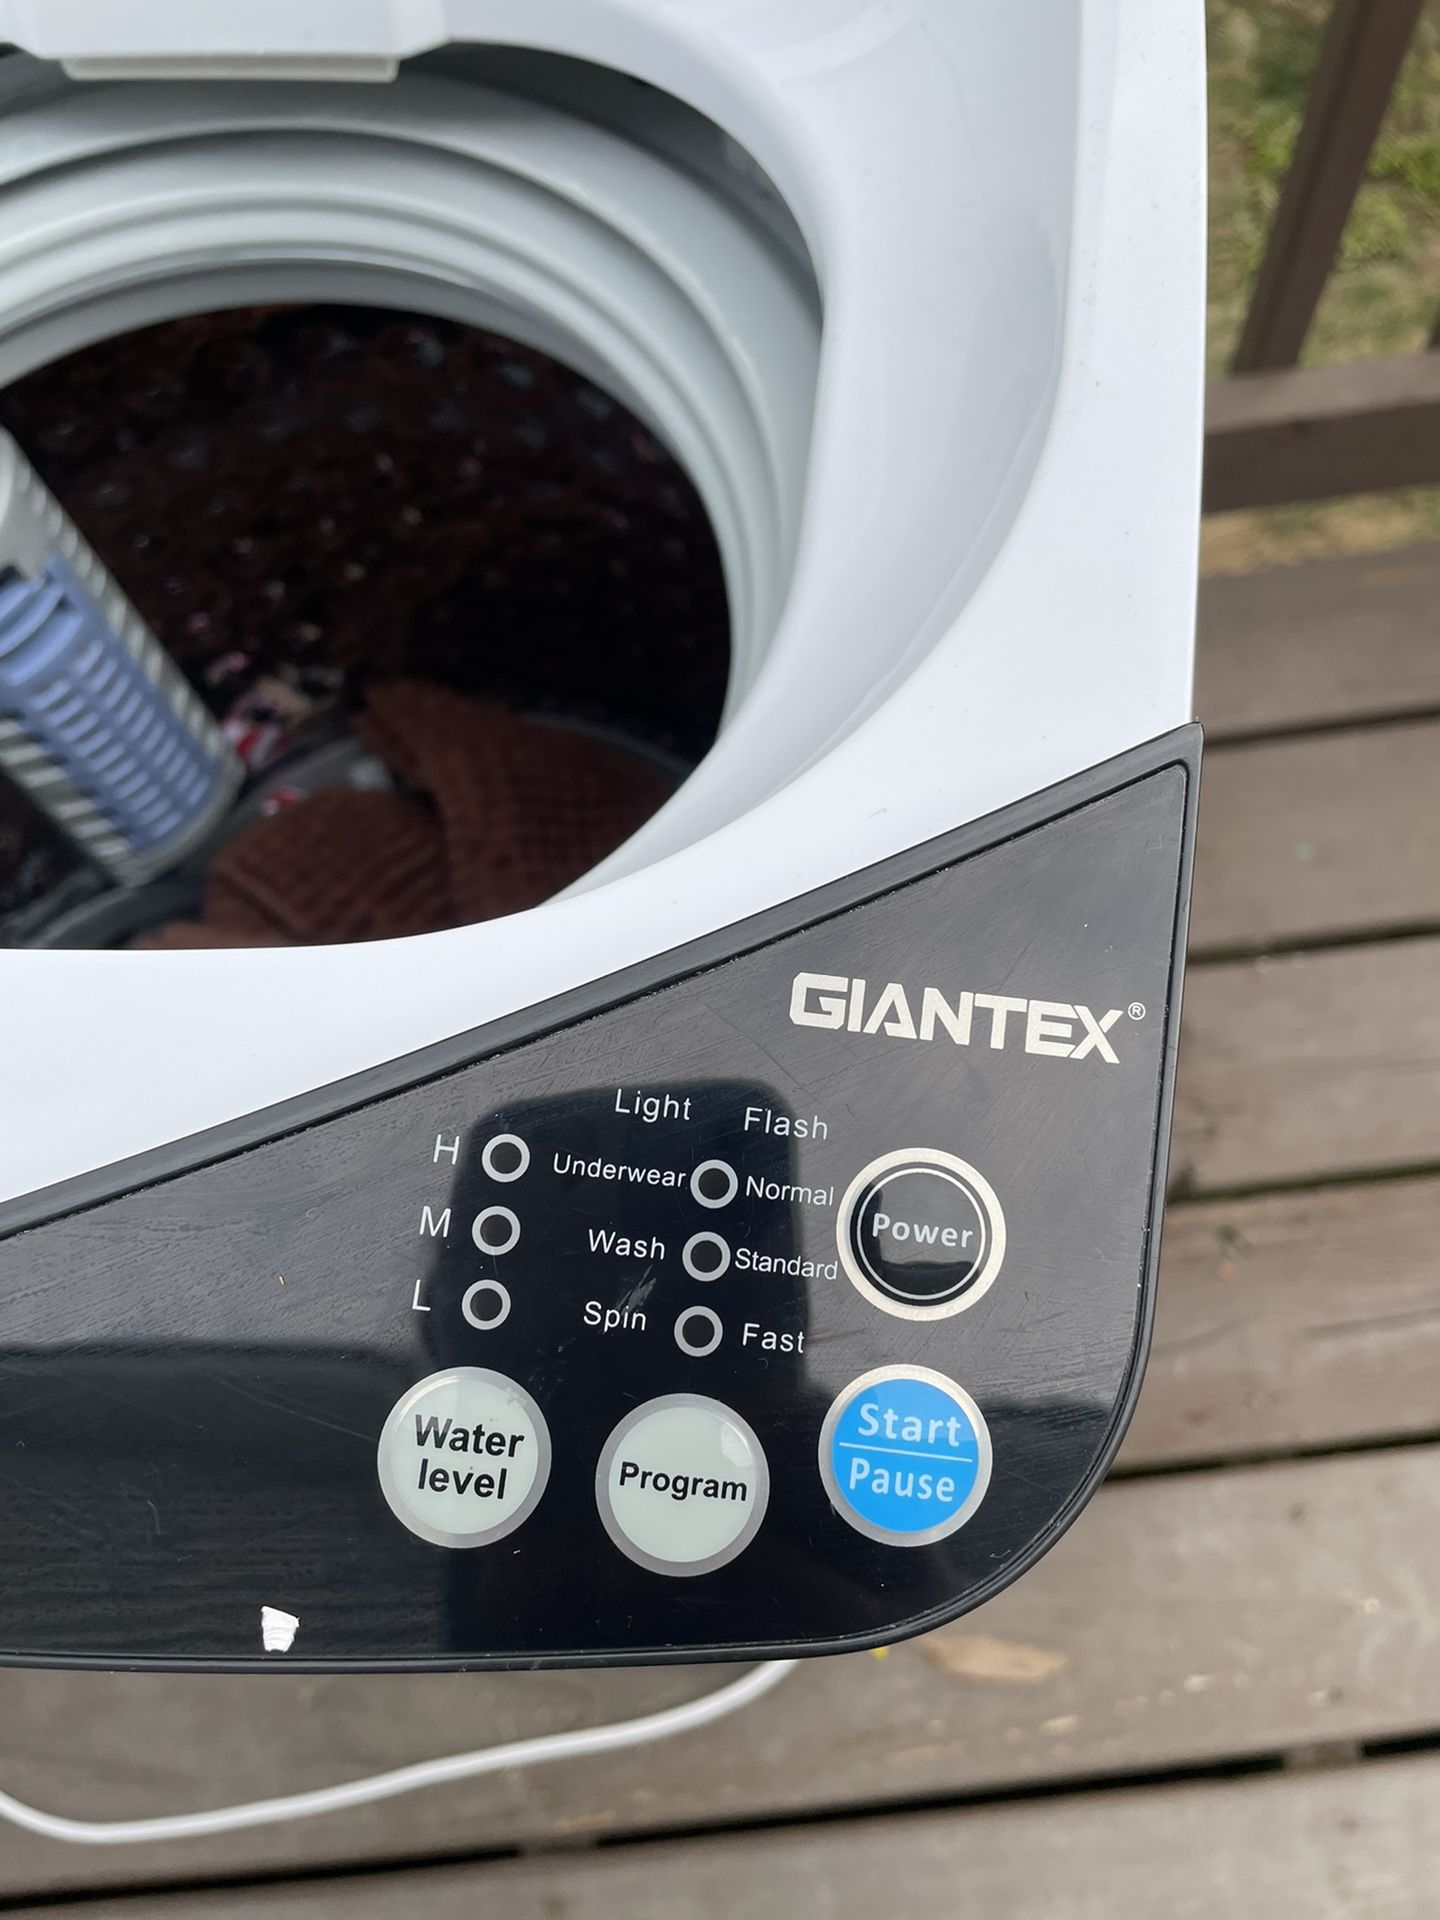  Giantex Lavadora portátil, combo de lavadora y